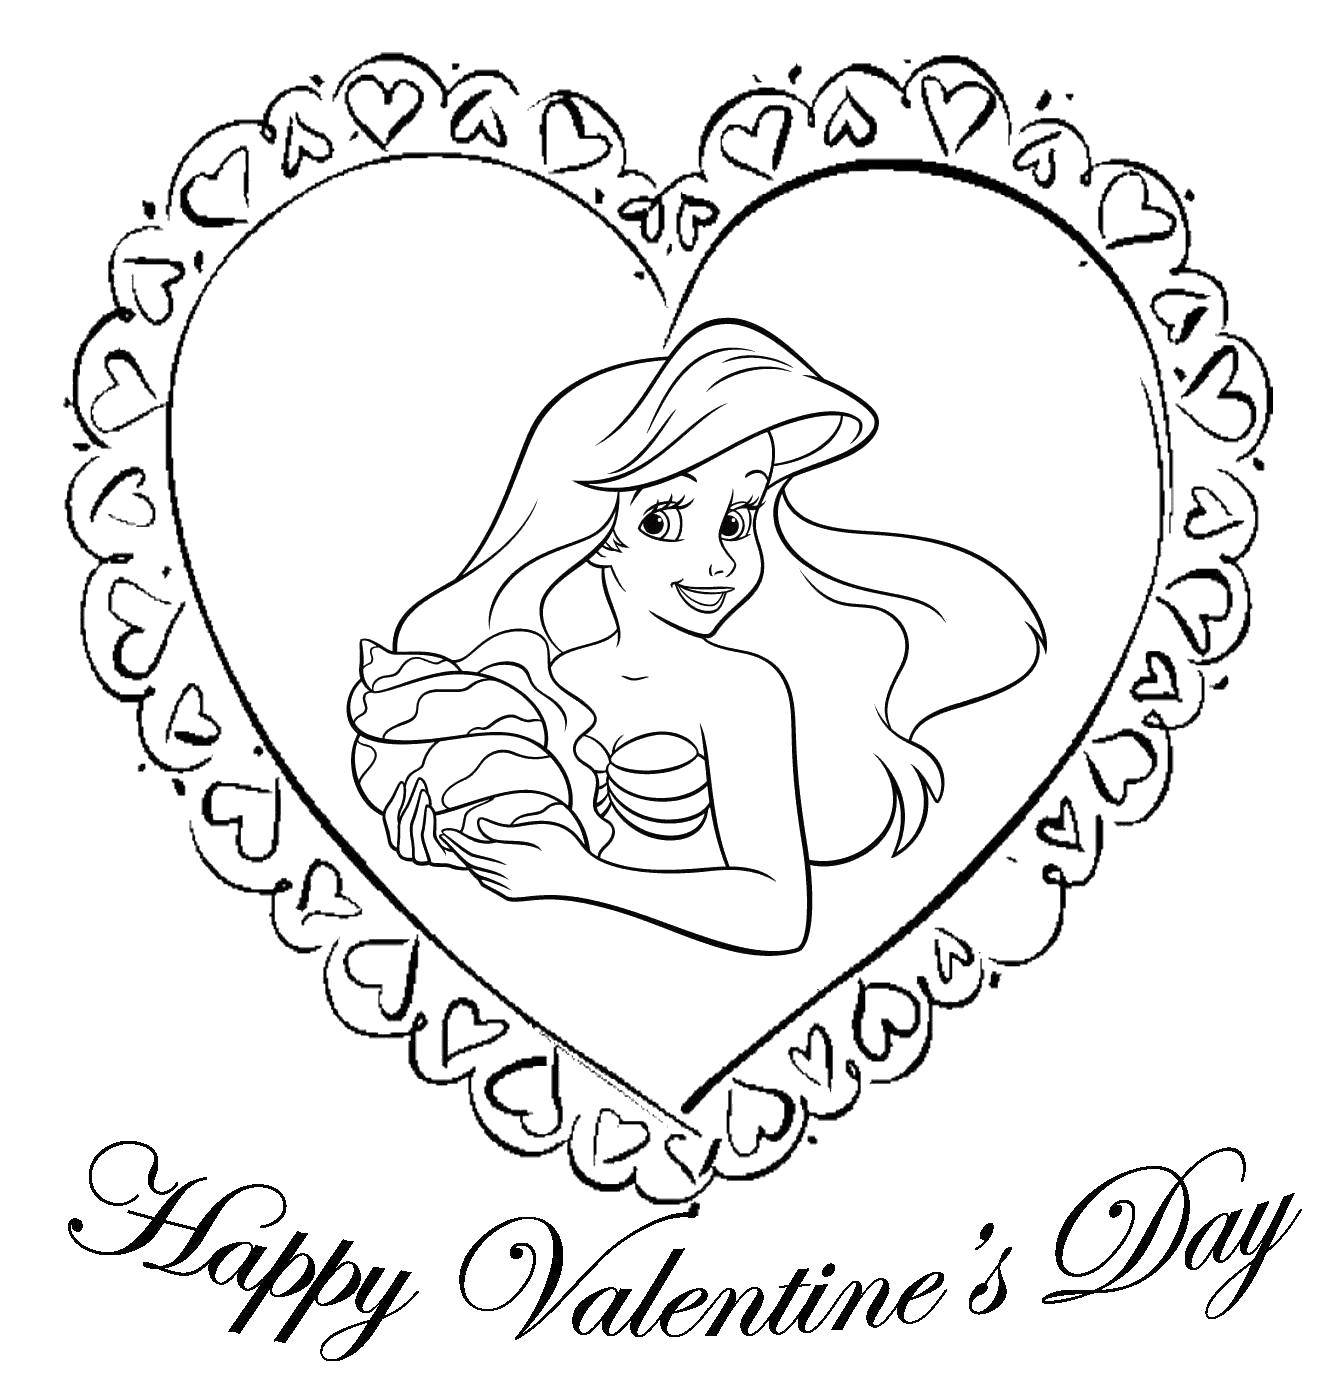 Название: Раскраска Русалочка ариэль из диснеевского мультфильма поздравляет с днем святого валенина. Категория: день святого валентина. Теги: День Святого Валентина, любовь, сердце, Ариэль.